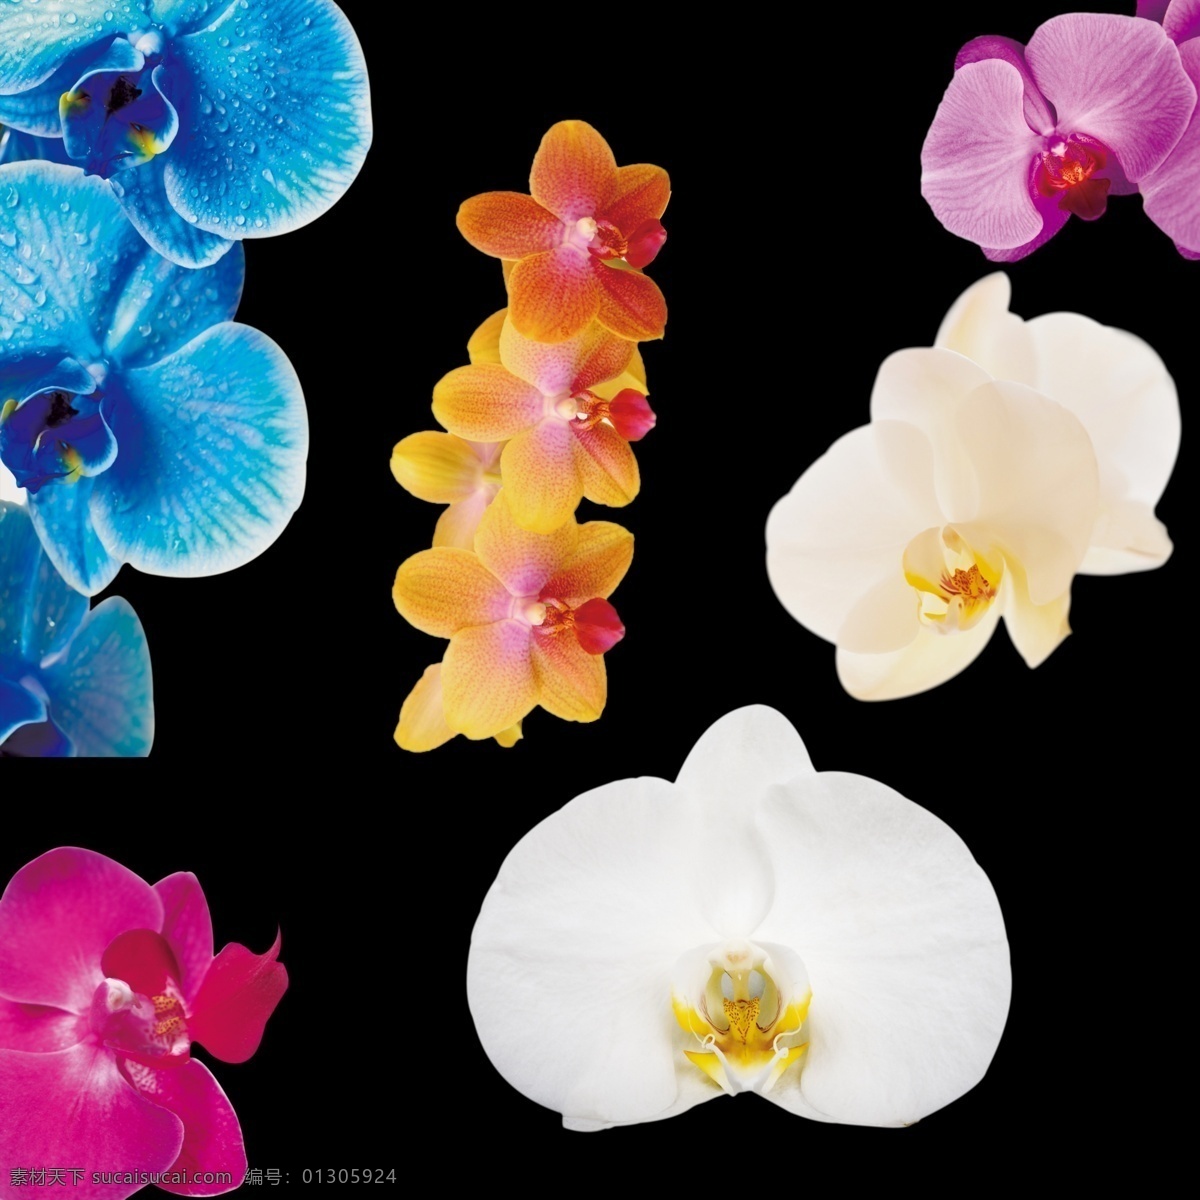 兰花 蝴蝶兰 抠 图 文件 花朵 设计元素 彩色花朵 分层